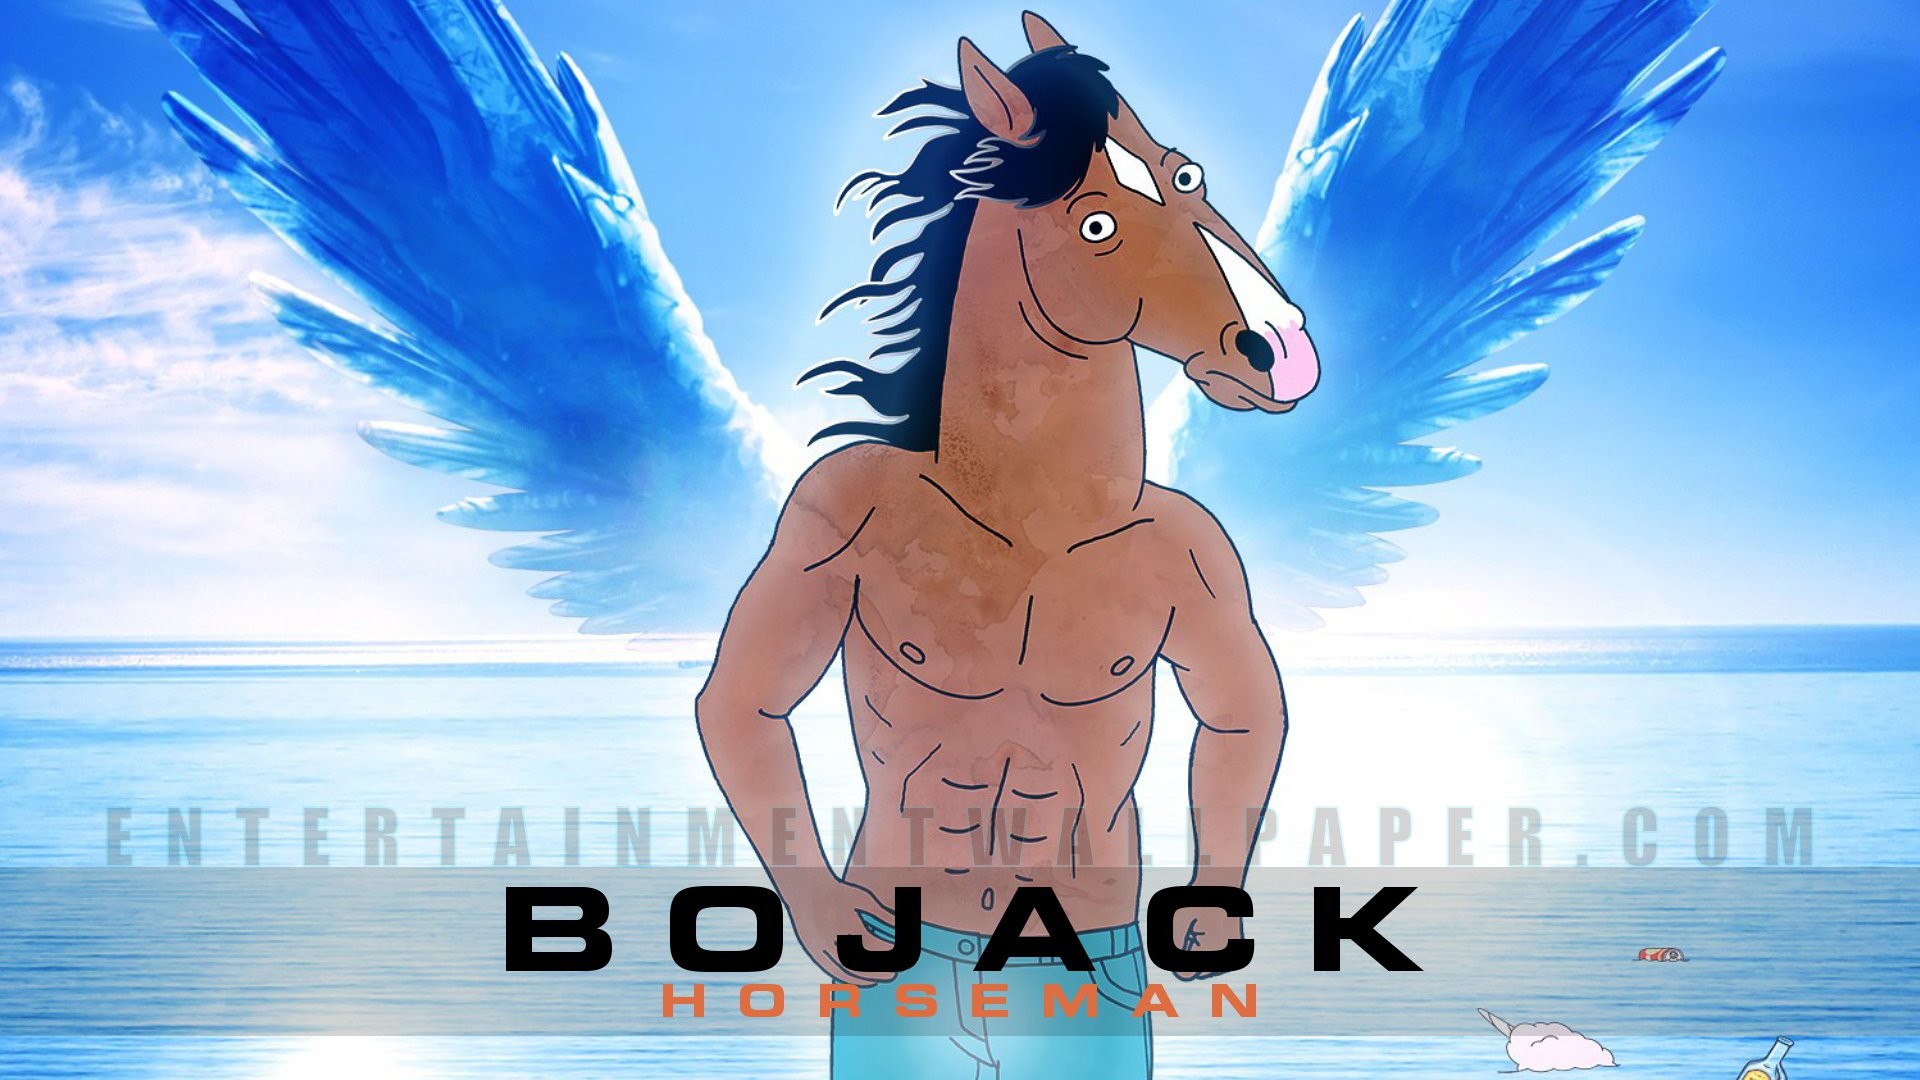 BoJack Horseman Wallpapers  Top 65 Best BoJack Horseman Backgrounds